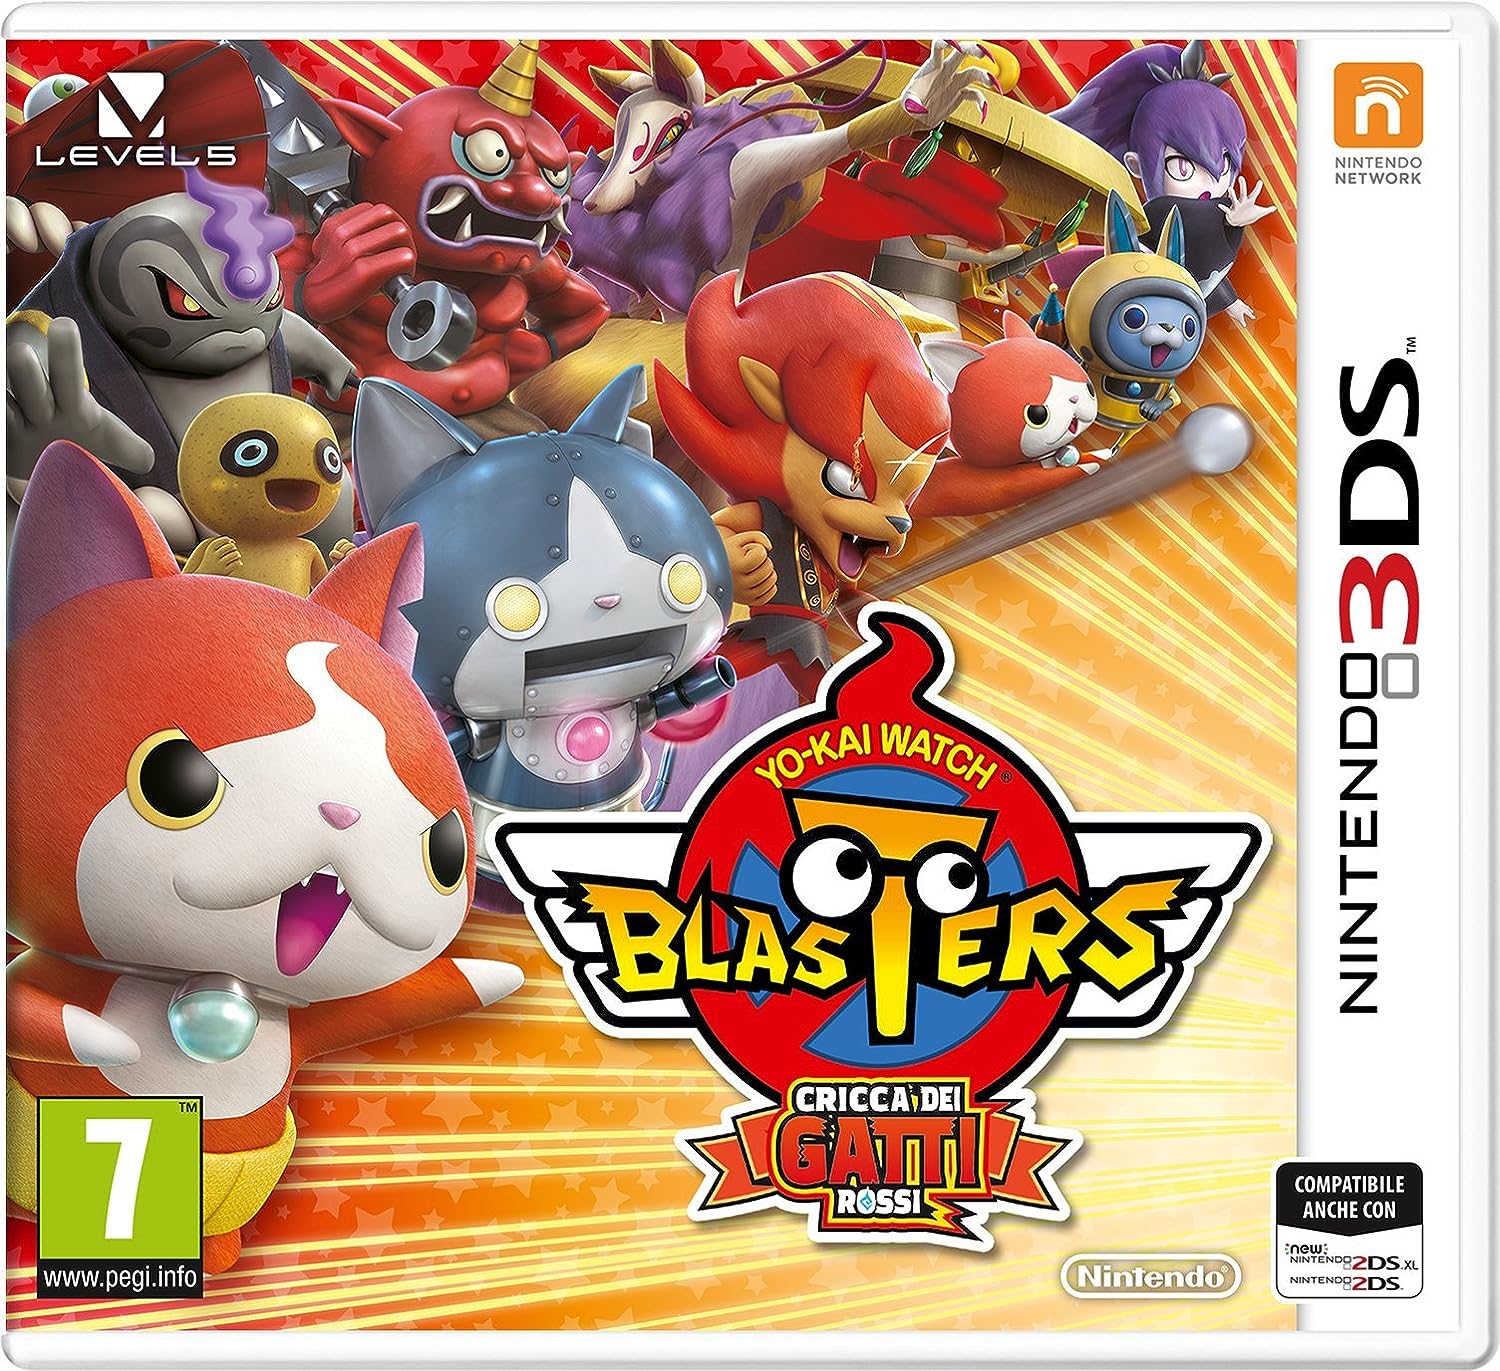 3DS Yo-Kai Watch Blasters: Cricca Dei Gatti Rossi Usato garantito - Disponibilità immediata Nintendo